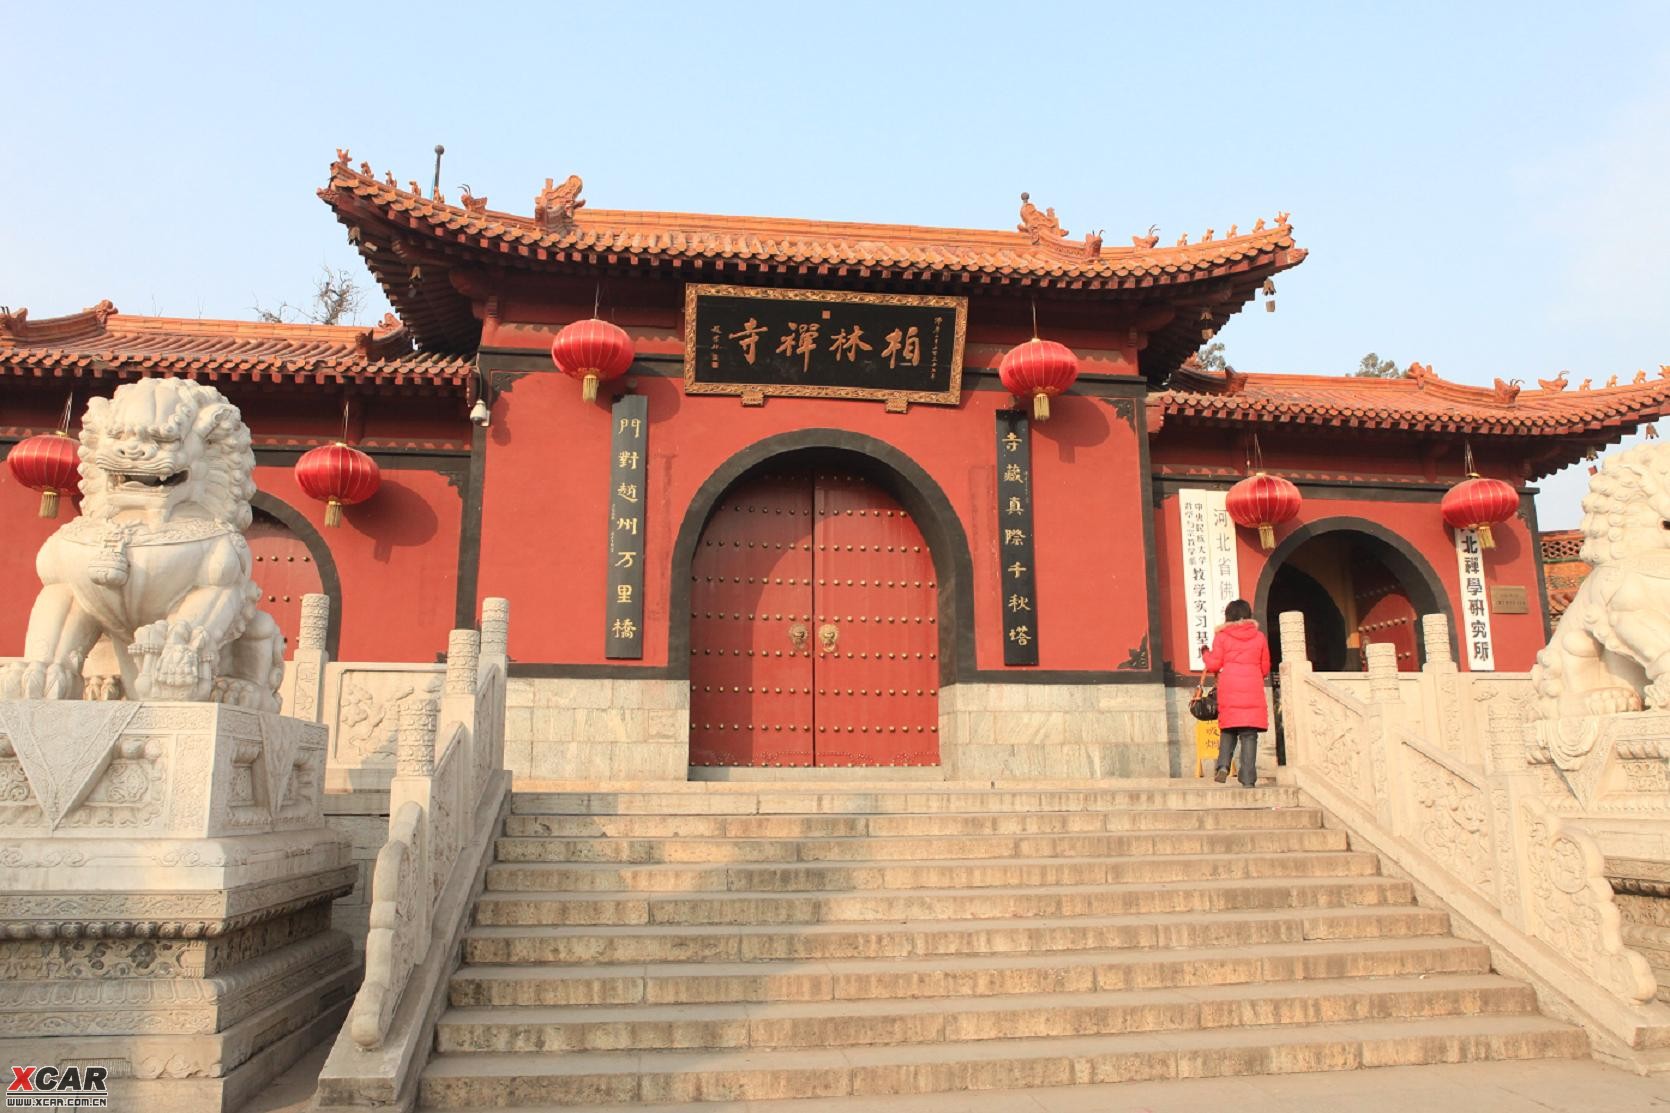 赵县柏林禅寺,始建于东汉建安年间,古称观音院,元代改为柏林禅寺